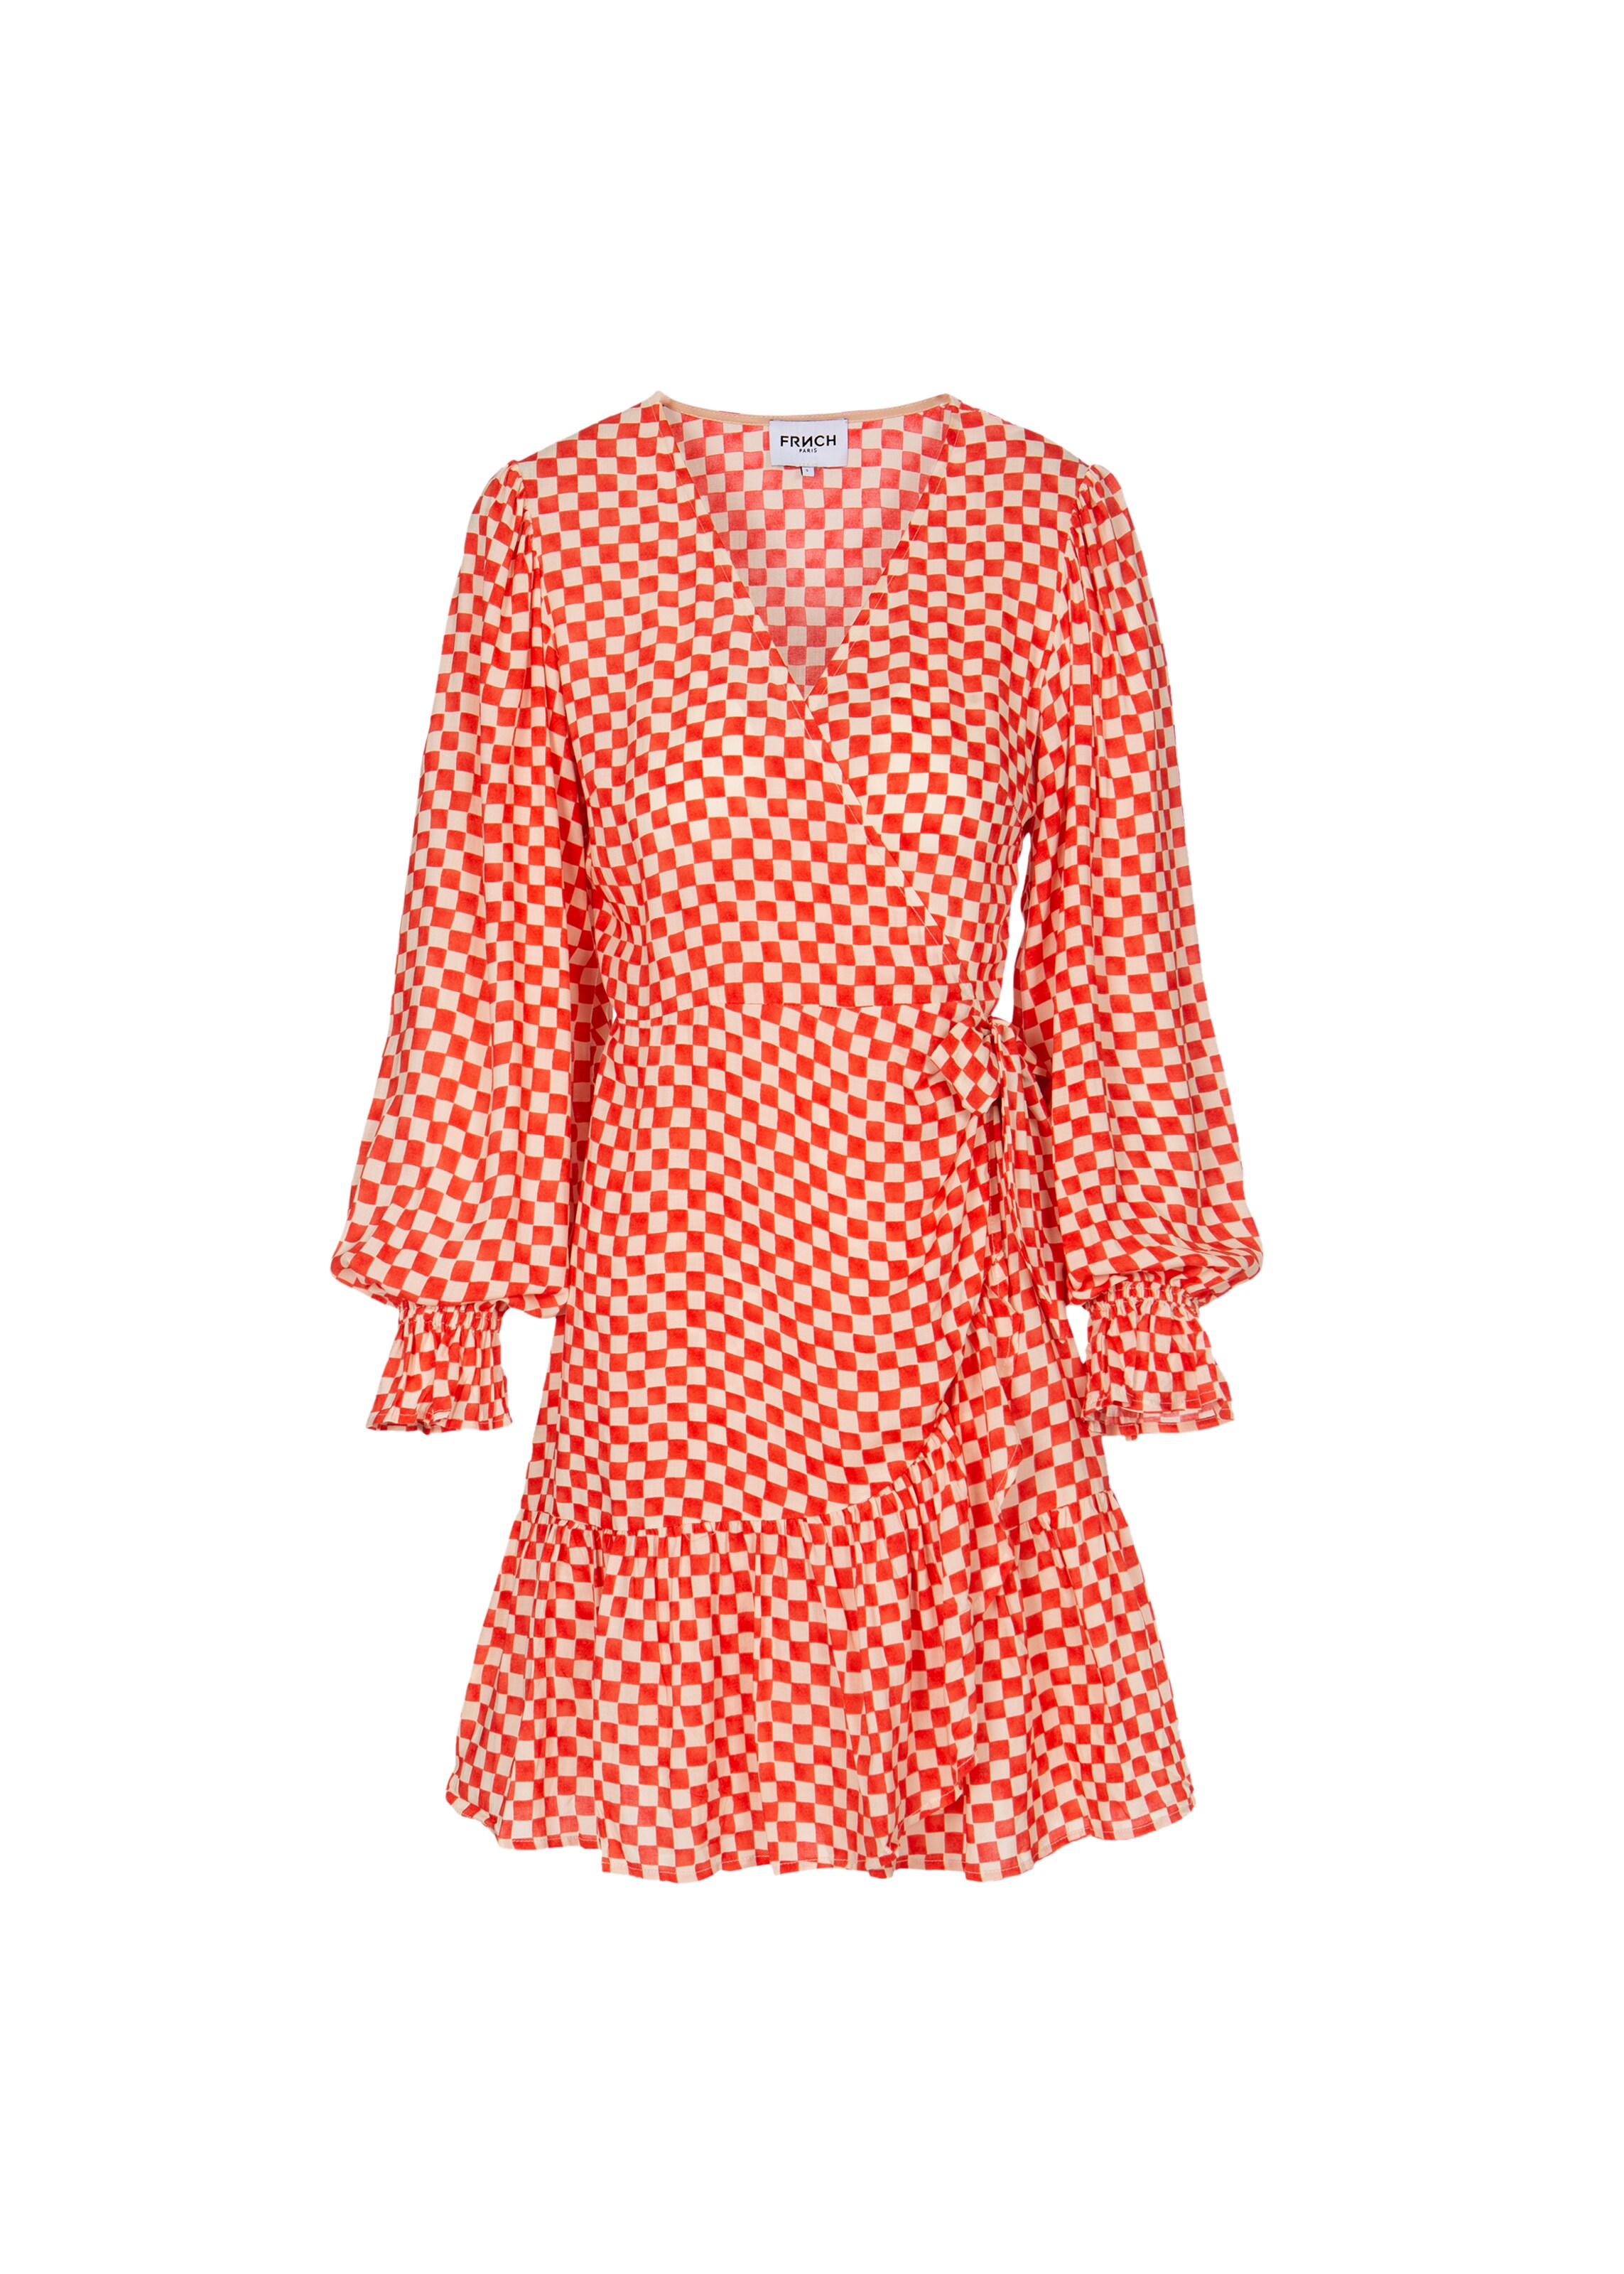 Frauen Kleider FRNCH PARIS Kleid 'Monique' in Rot - LF15074